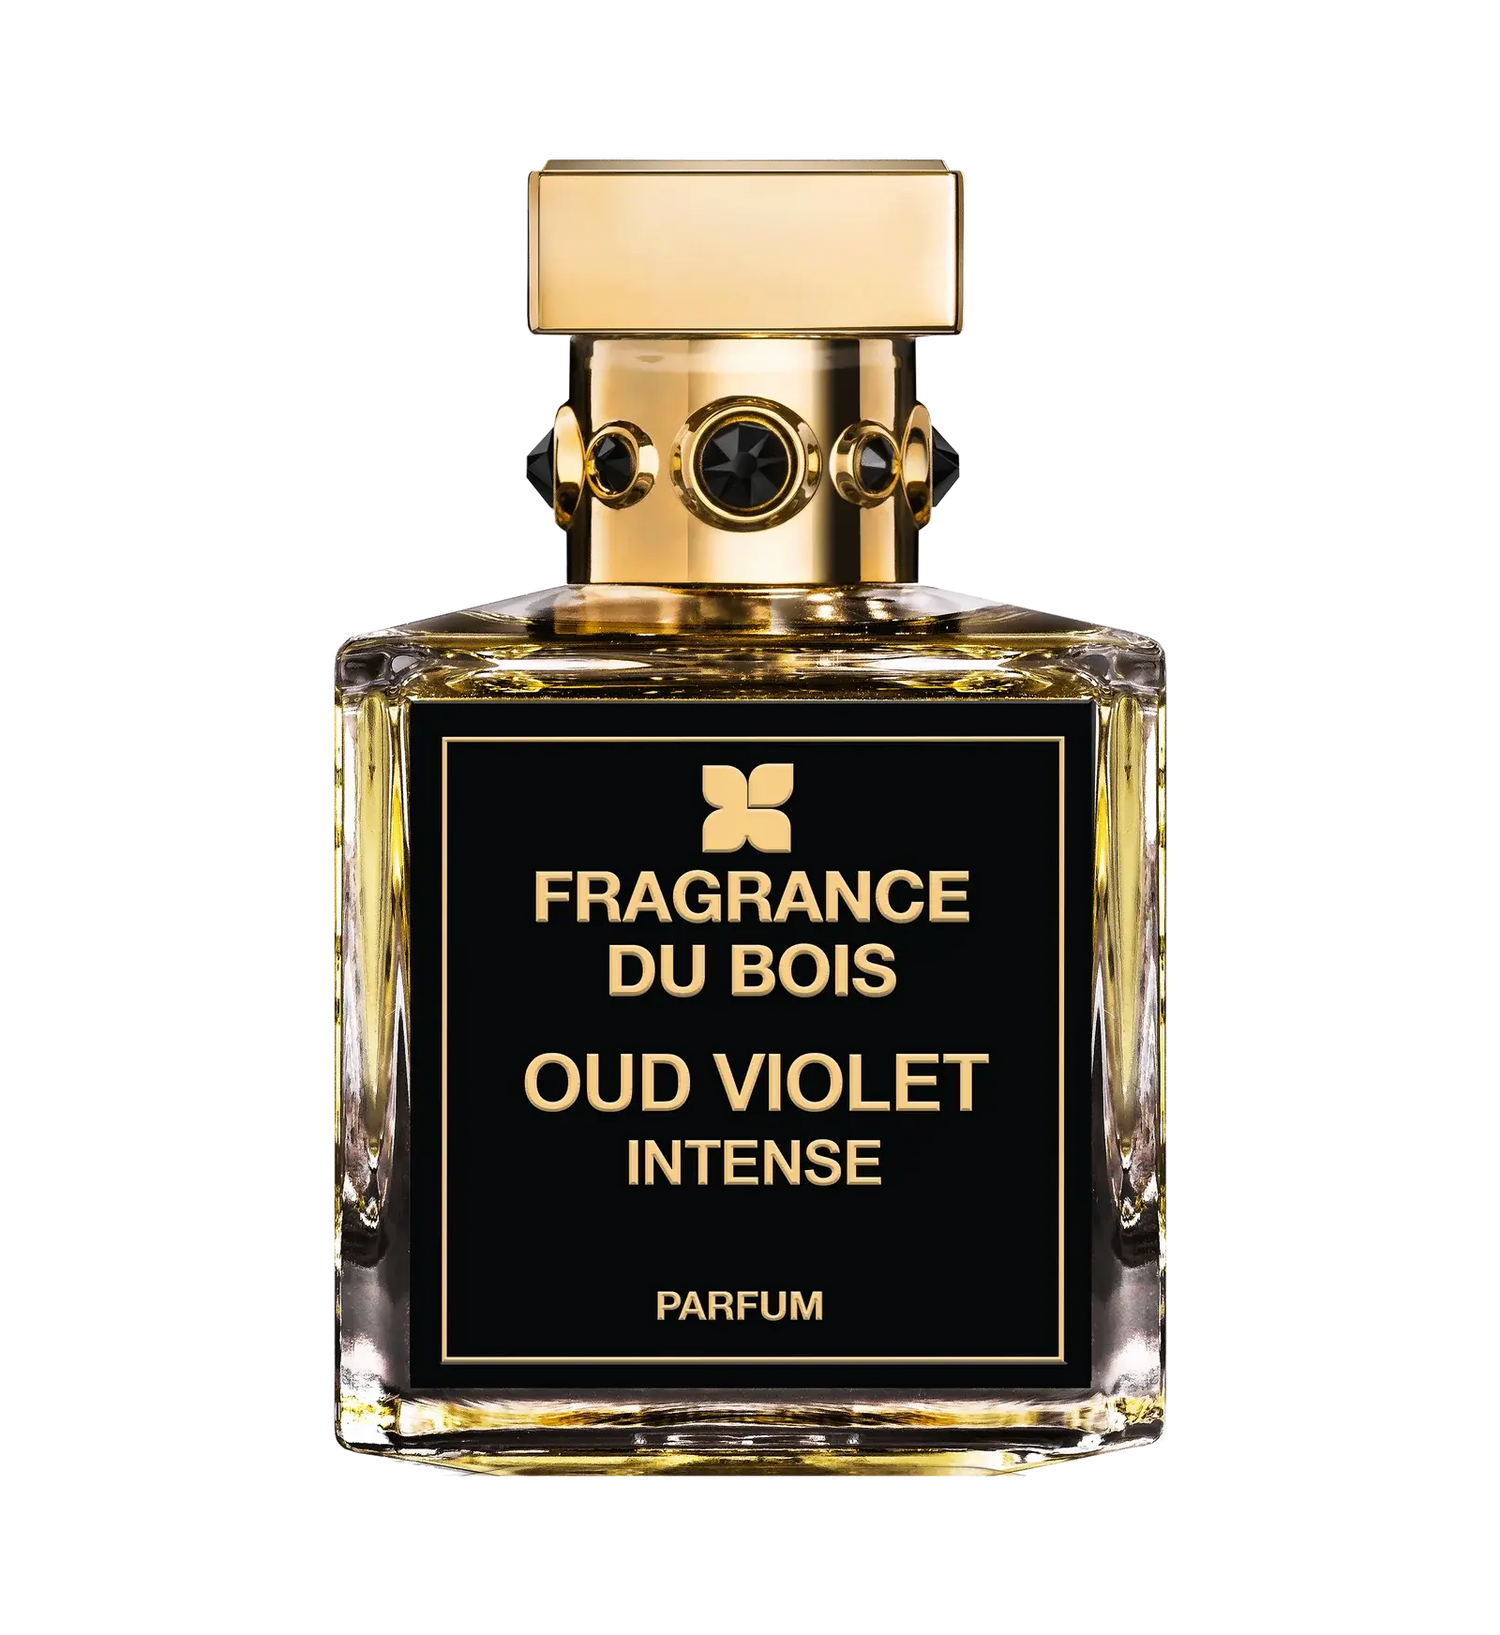 Fragrance du bois Fragrance du Bois Oud Violet Intense Edp - 50 ml